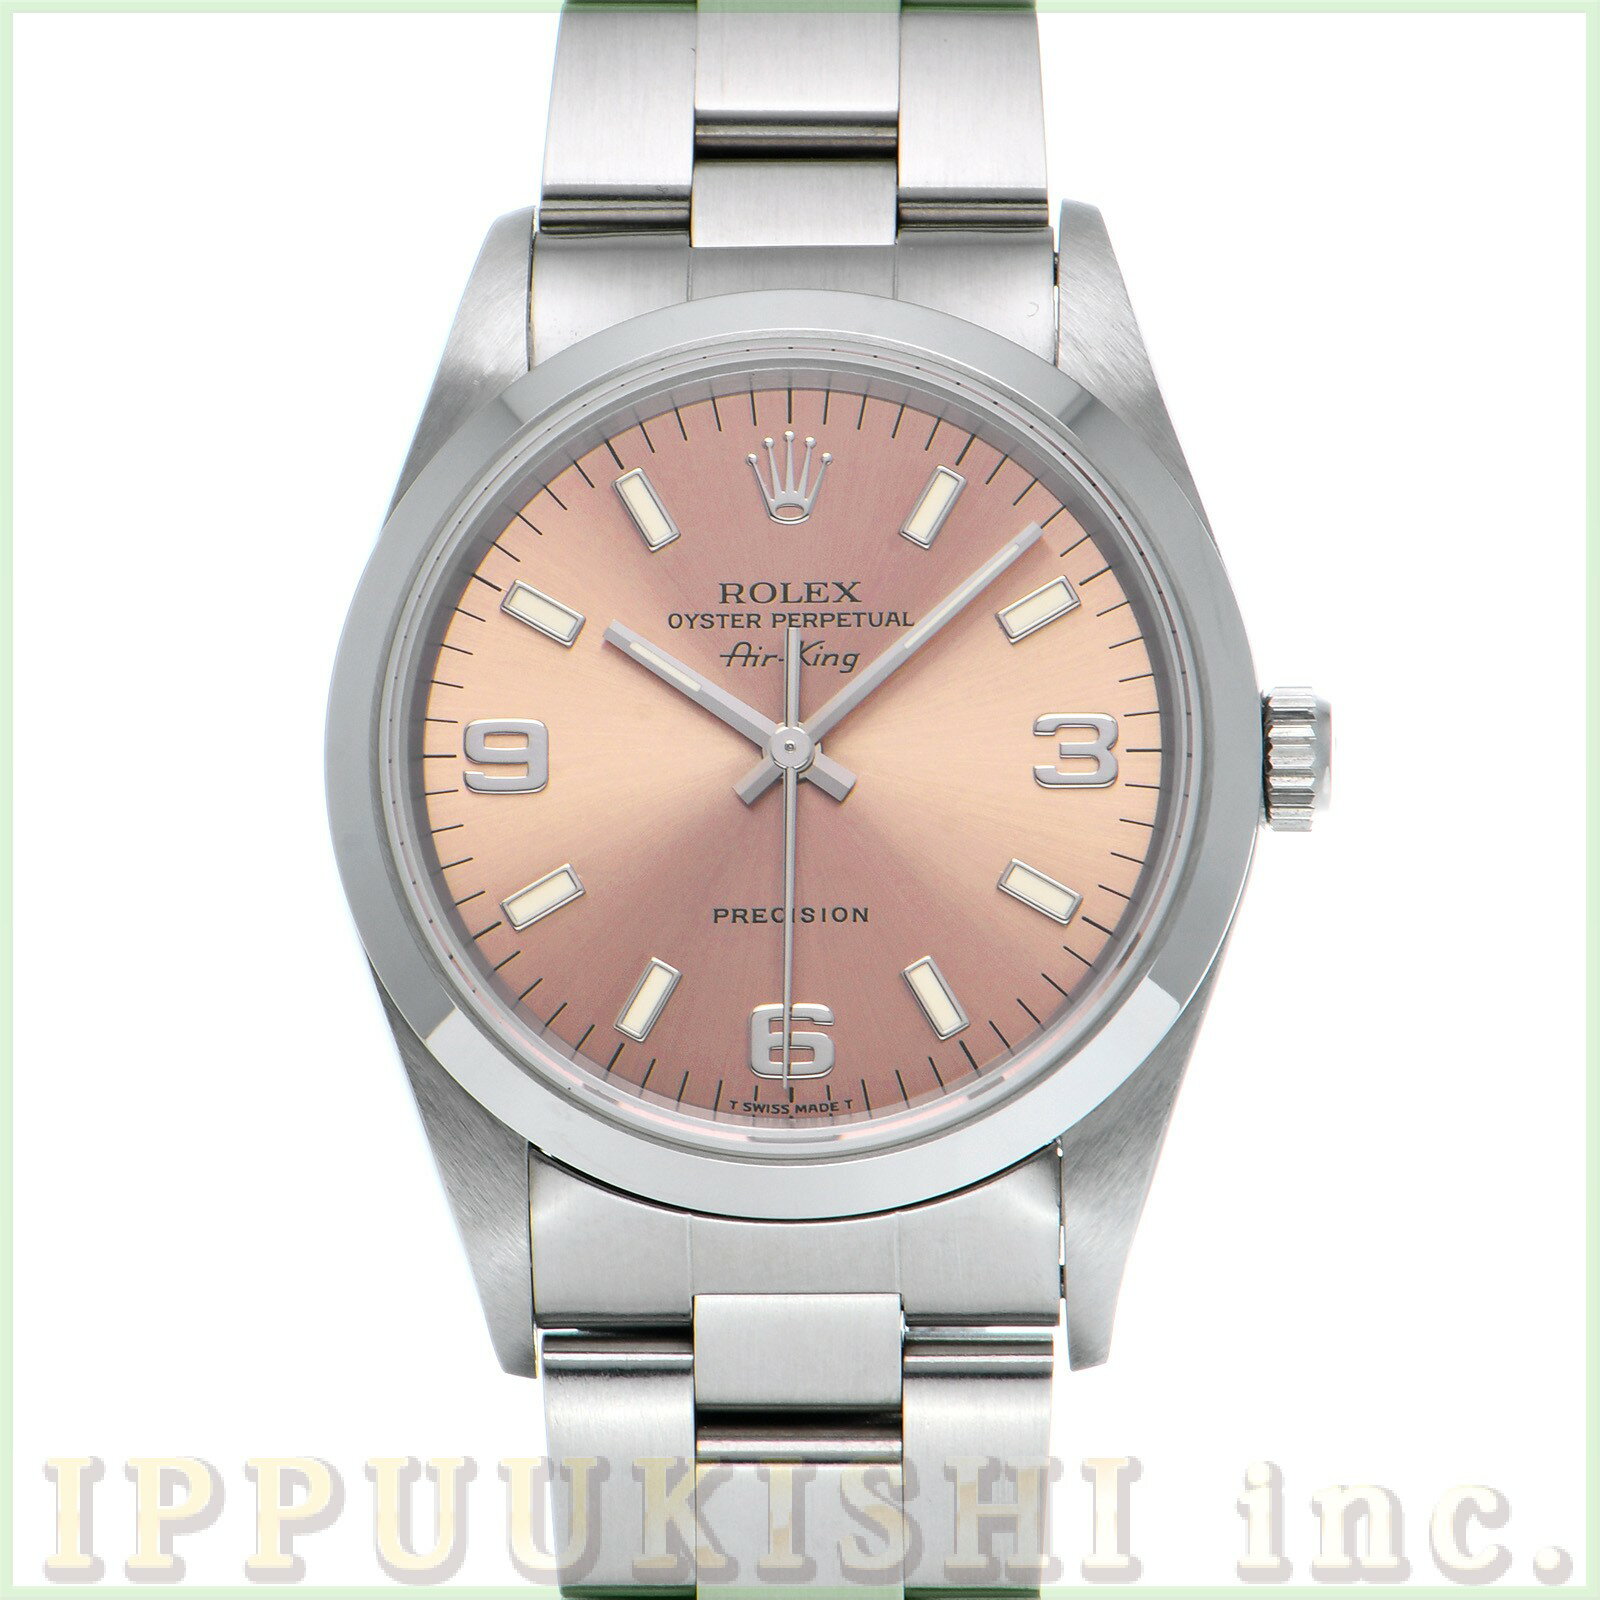 【中古】 ロレックス ROLEX エアキング 14000 T番(1996年頃製造) ピンク メンズ 腕時計